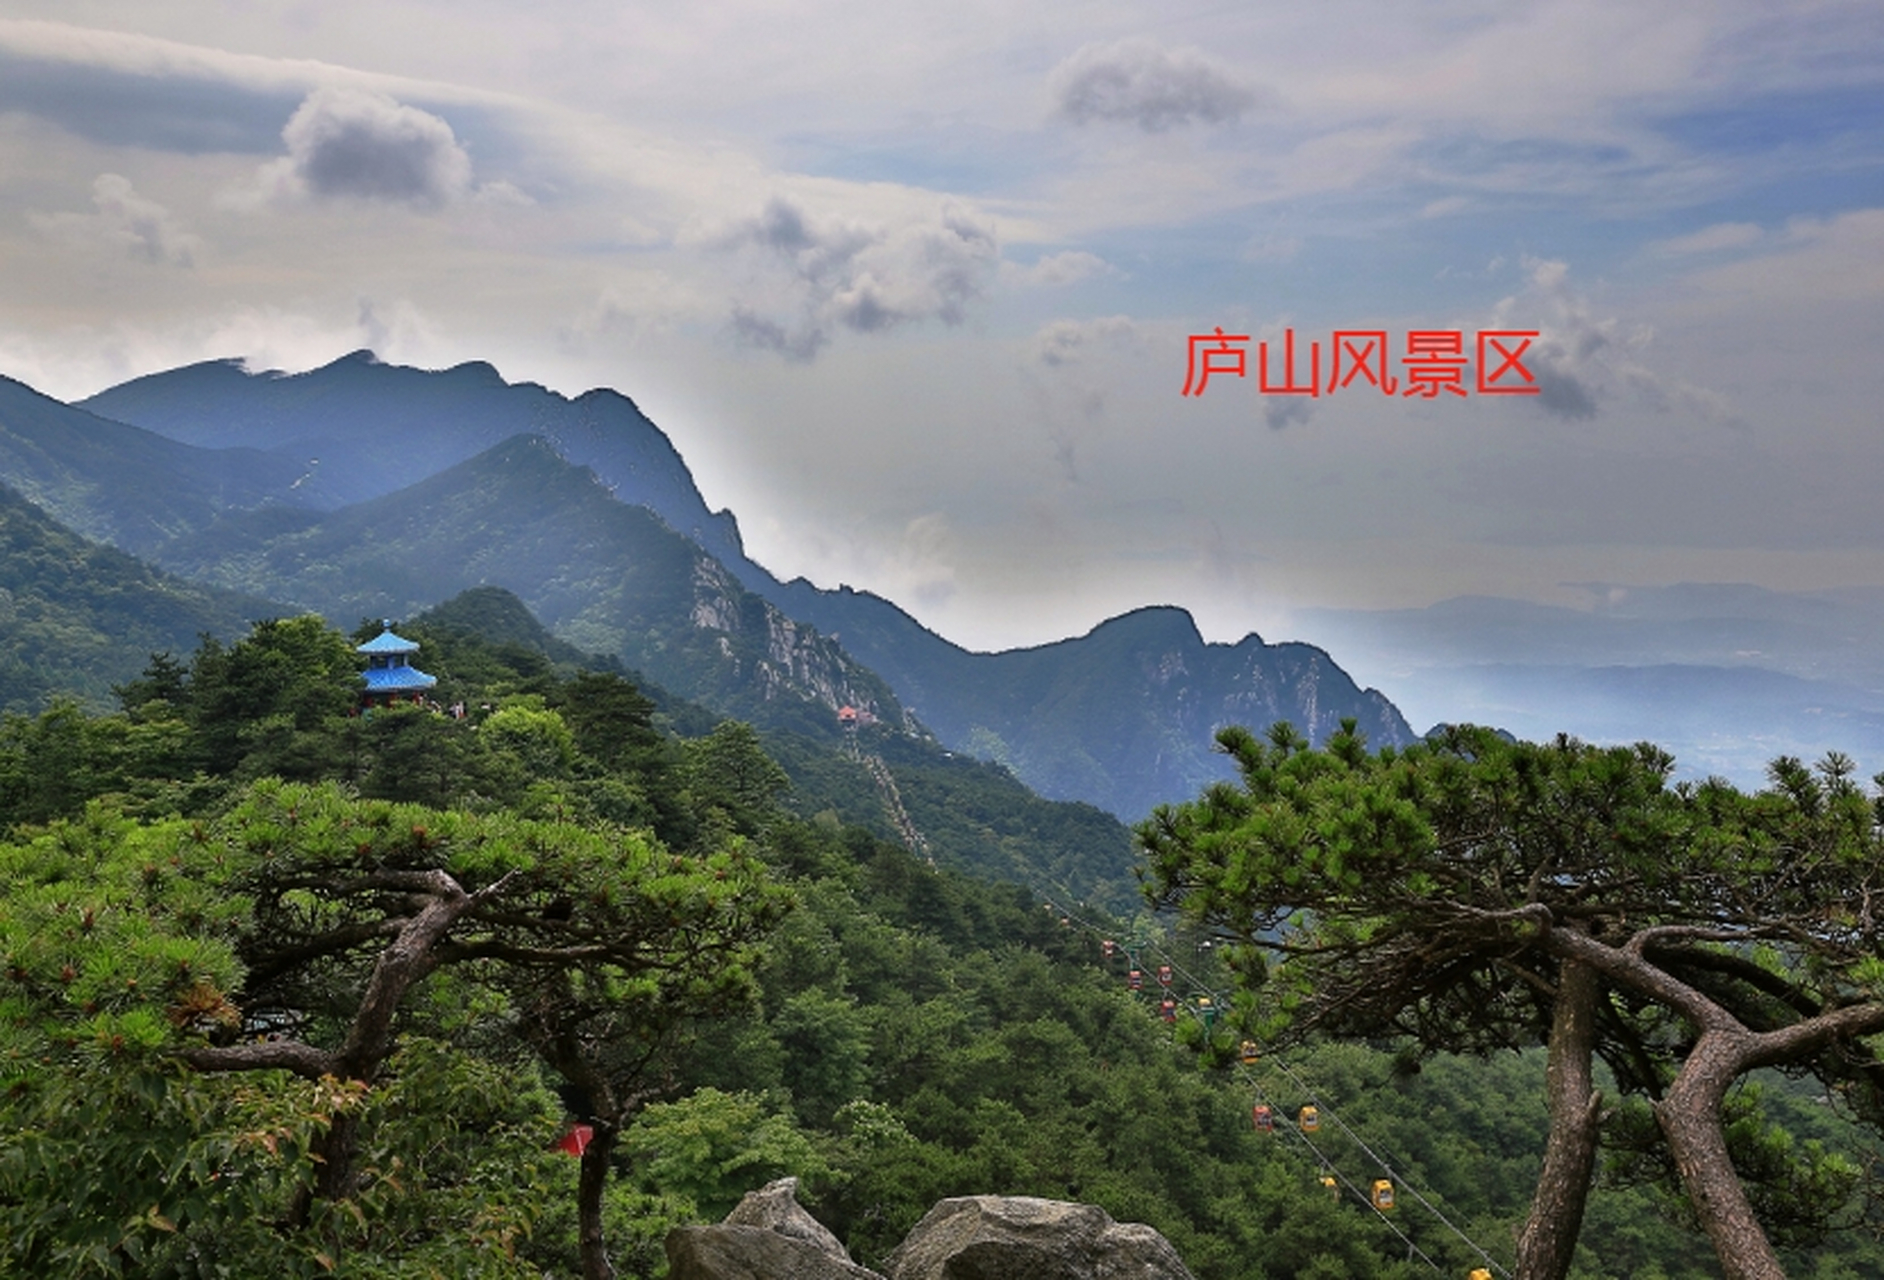 江西5a景区名单  1,武功山风景区 景点特色:山峰奇特,云海壮观